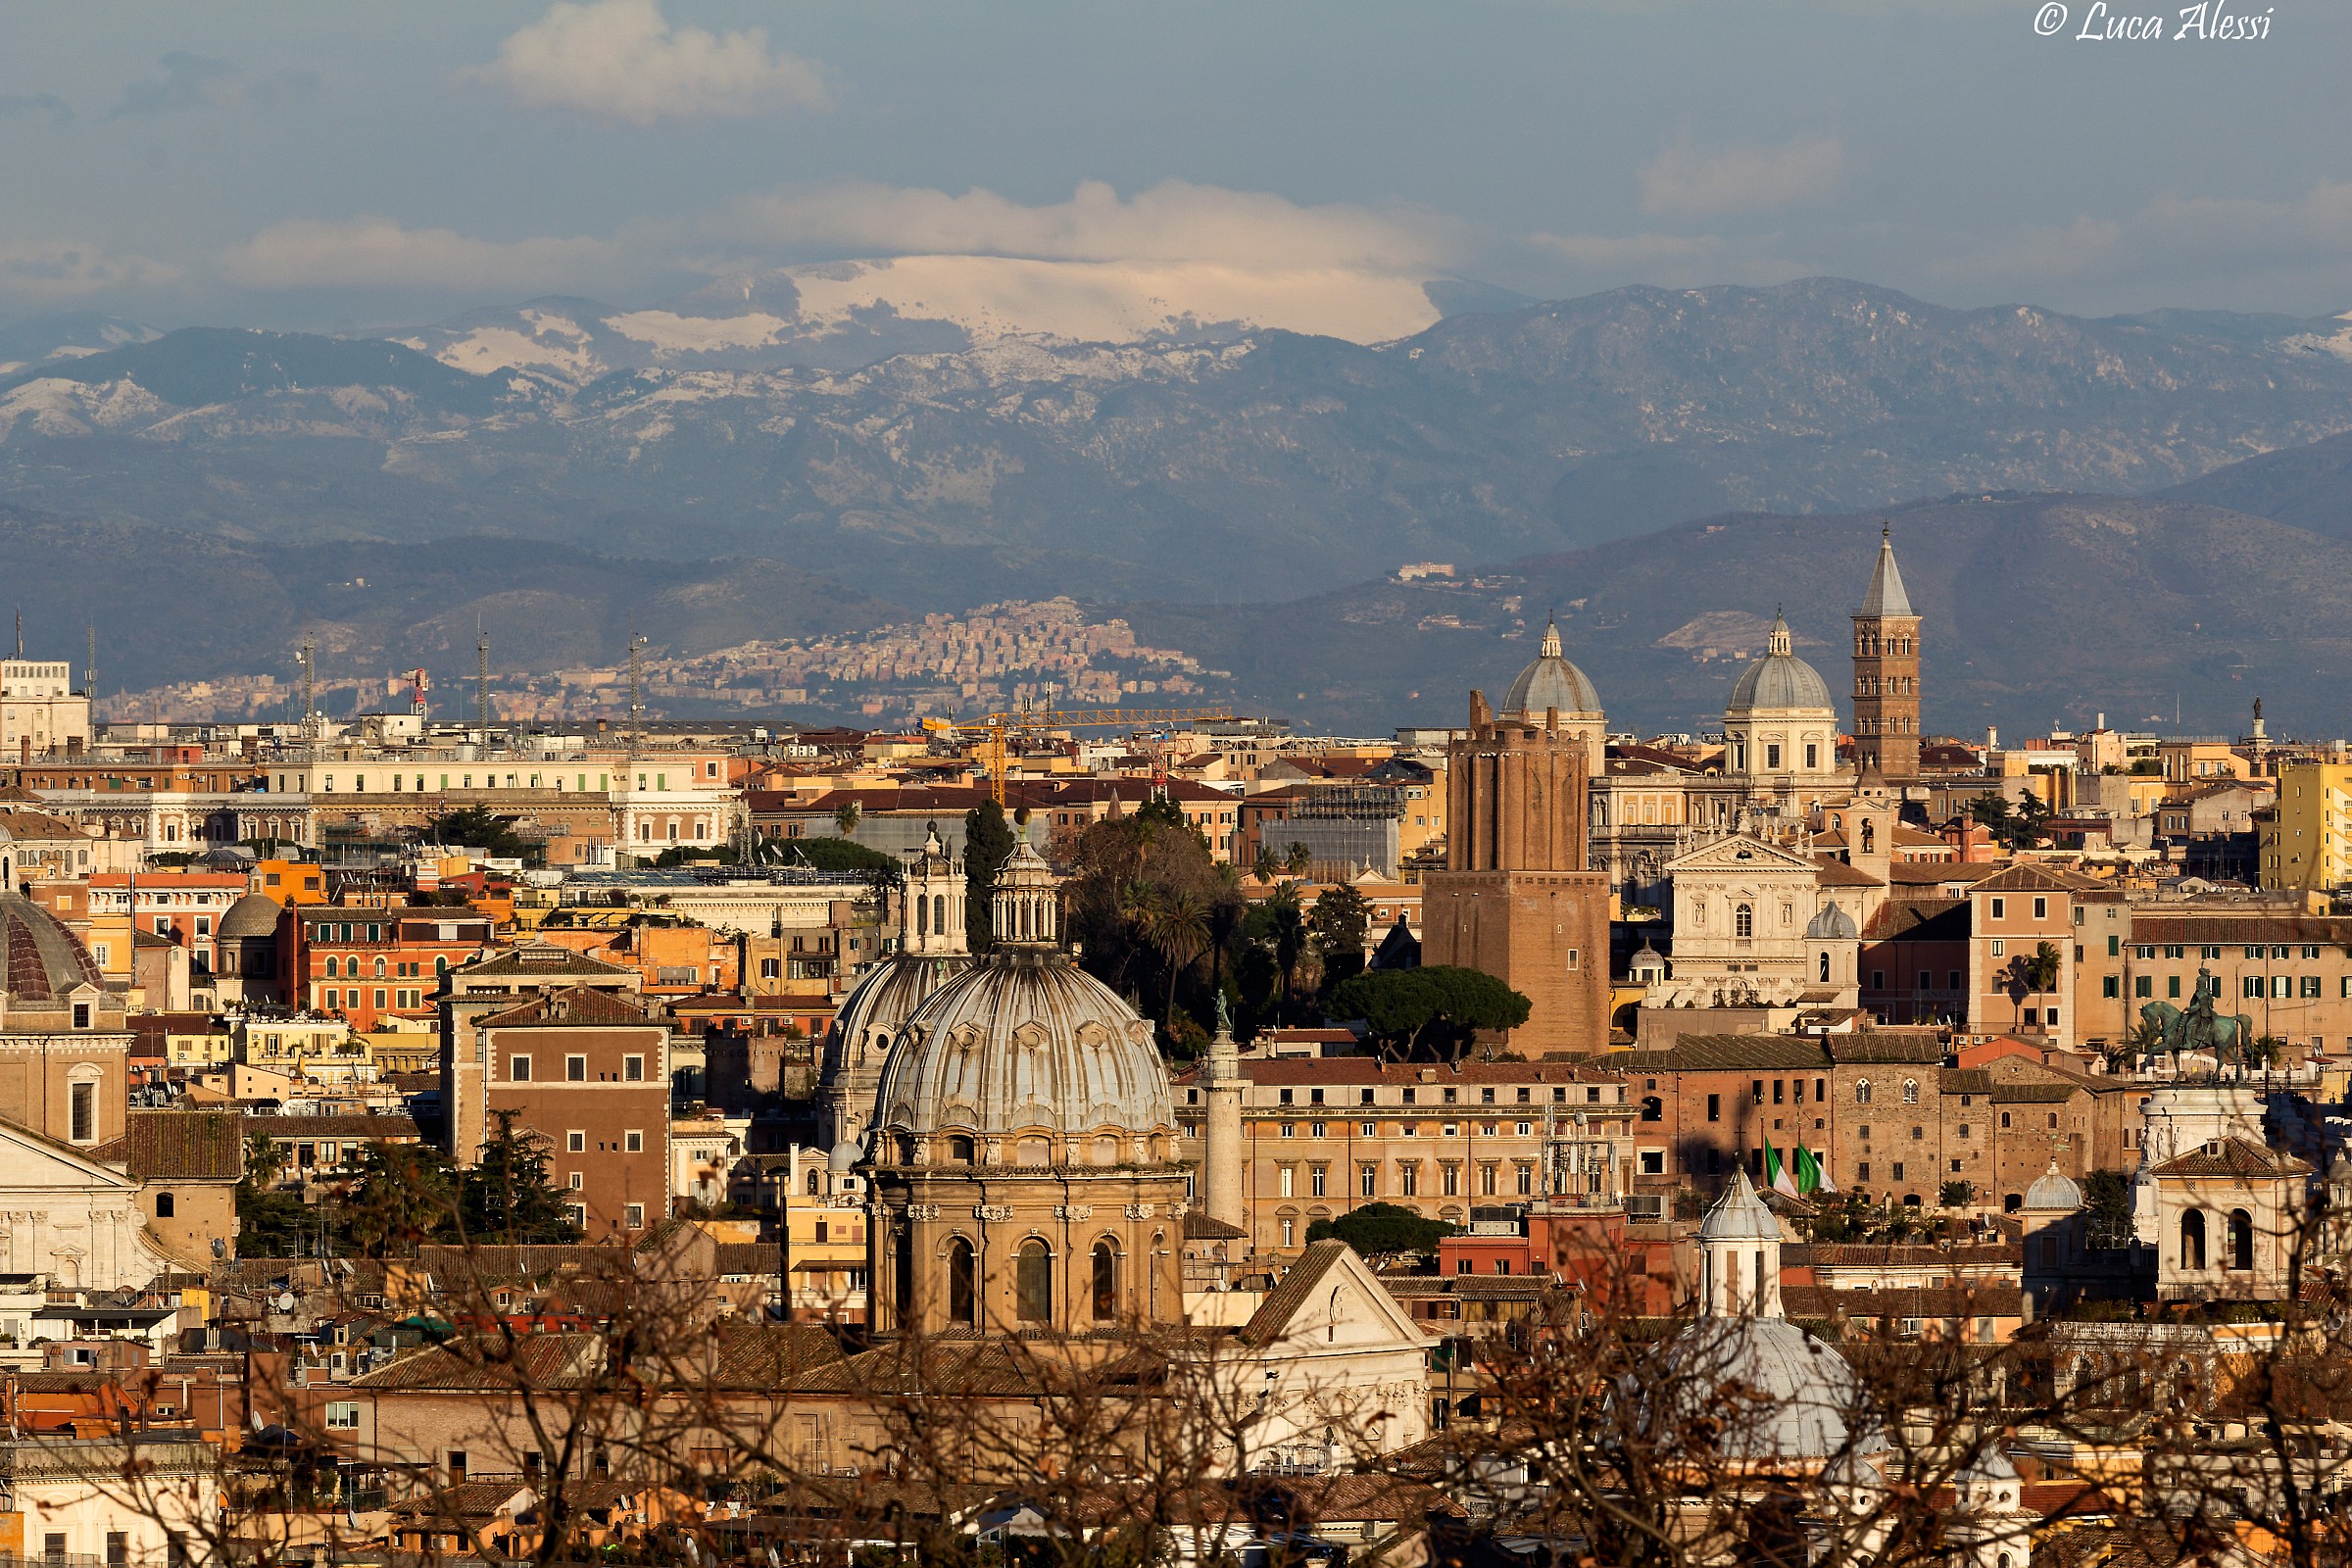 Rome, Tivoli and the top of Vallevona...